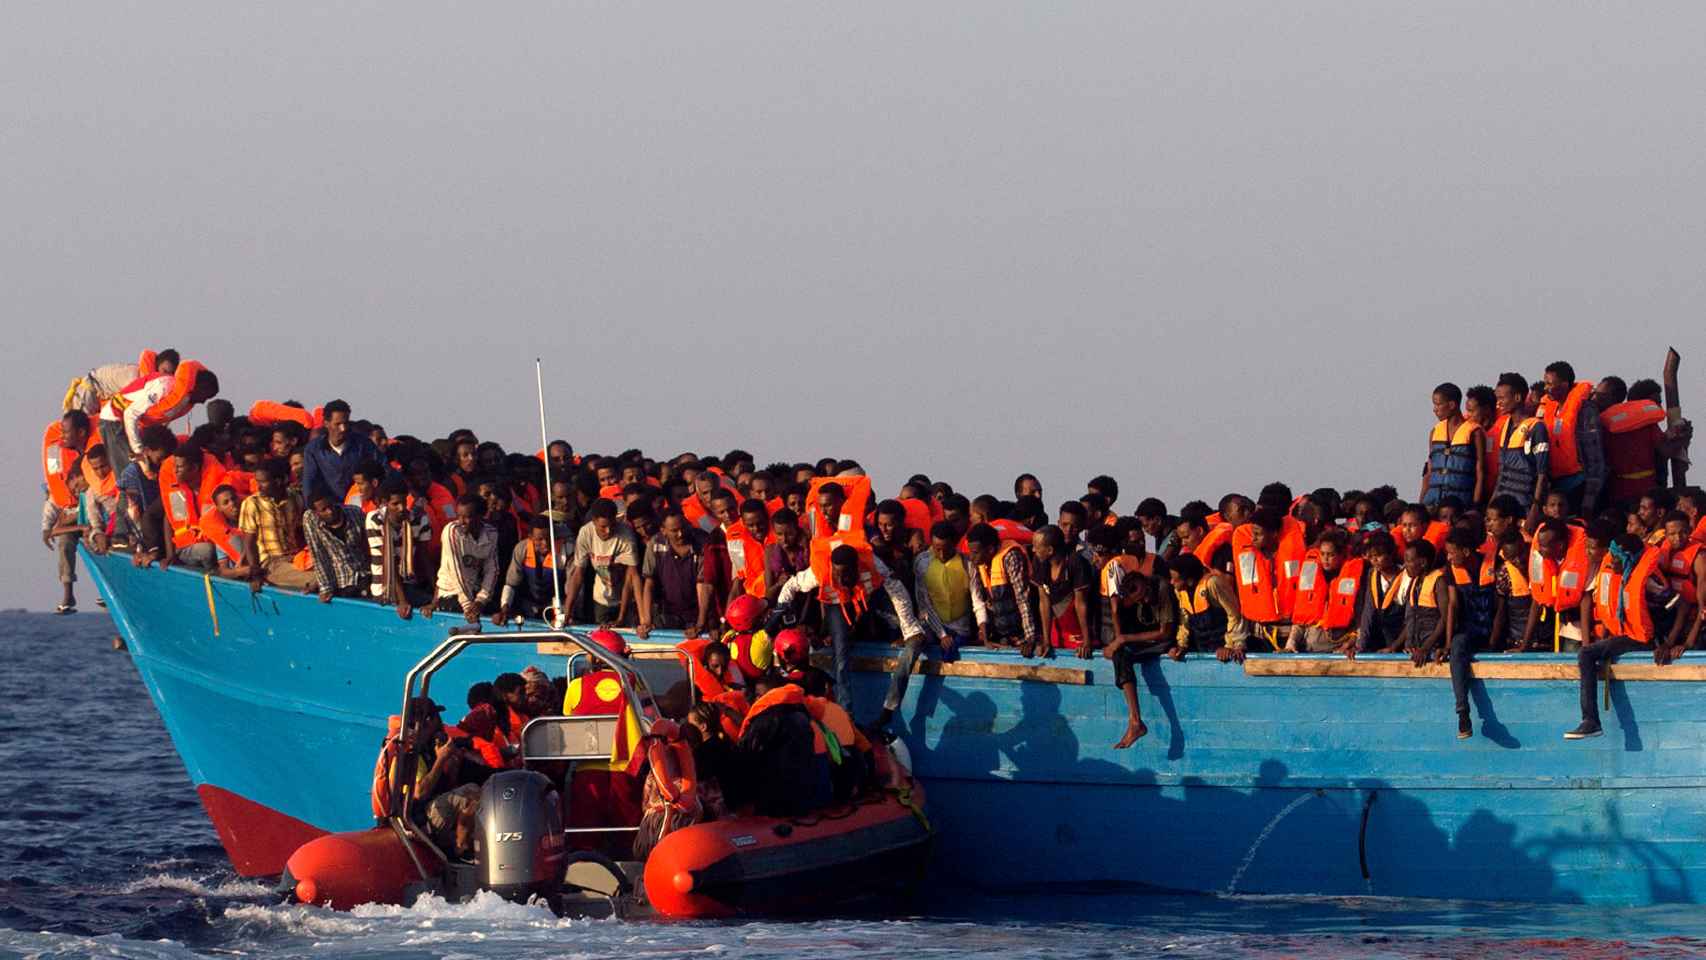 En la barca de madera viajaban entre 600 y 700 personas según MSF.